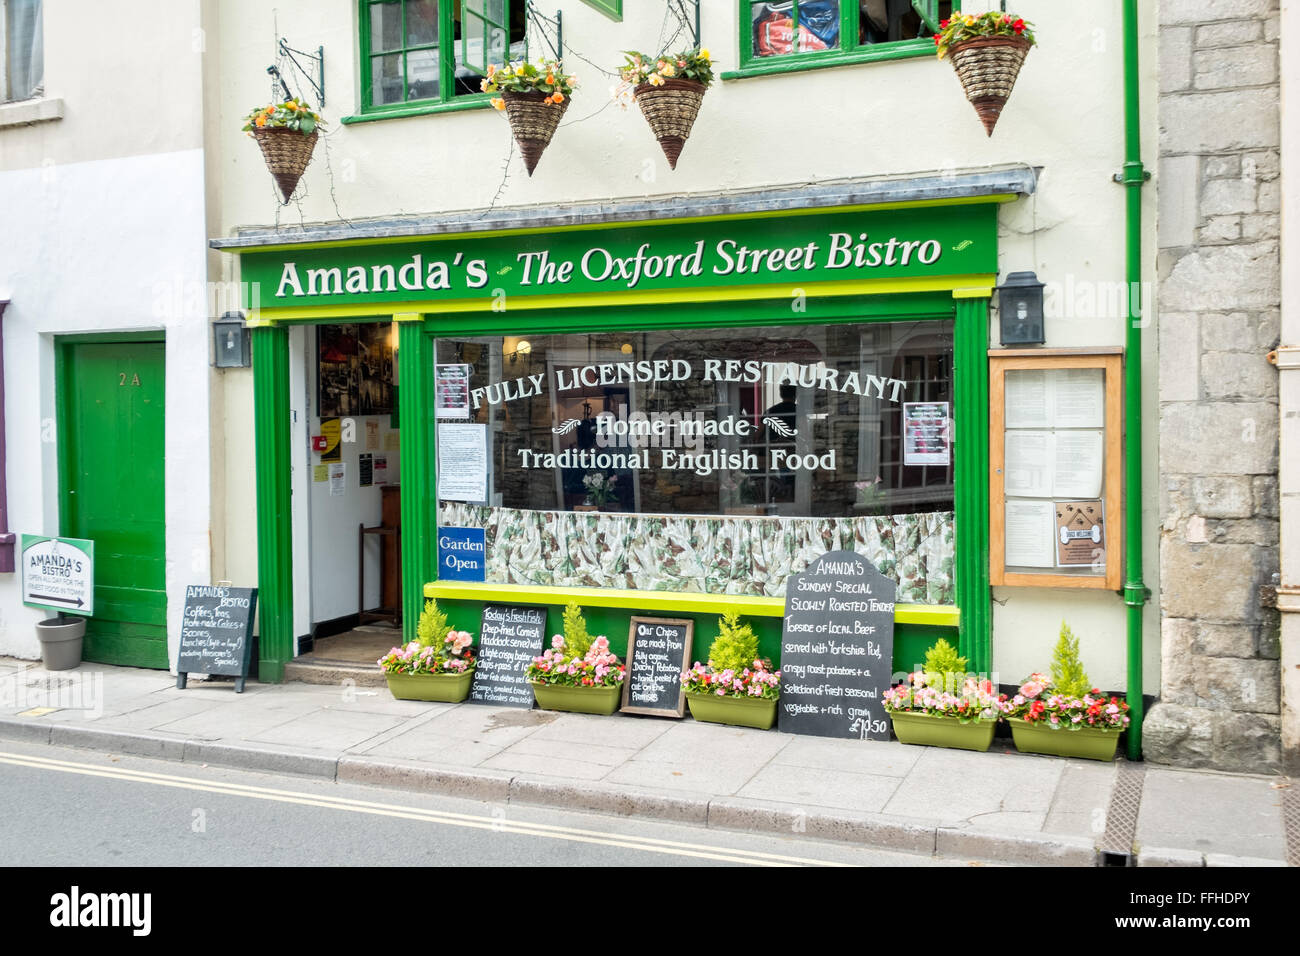 Die Vorderseite einer typisch britischen Stadt lizenzierte Restaurant, "Amanda" Bistro auf Oxford Straße, Malmesbury, Wiltshire, Großbritannien Stockfoto